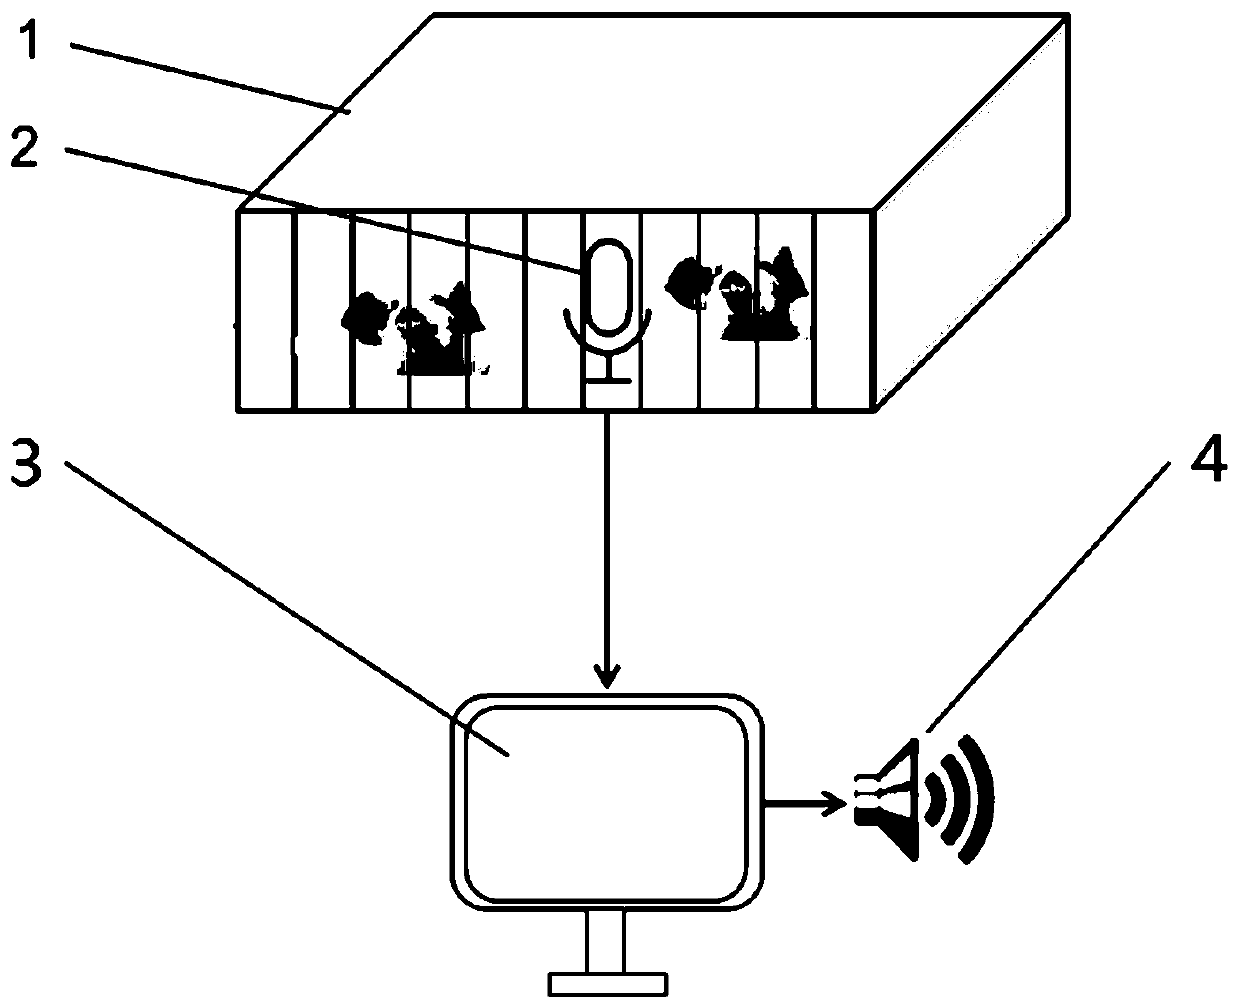 Sound-based pig behavior recognition method and system